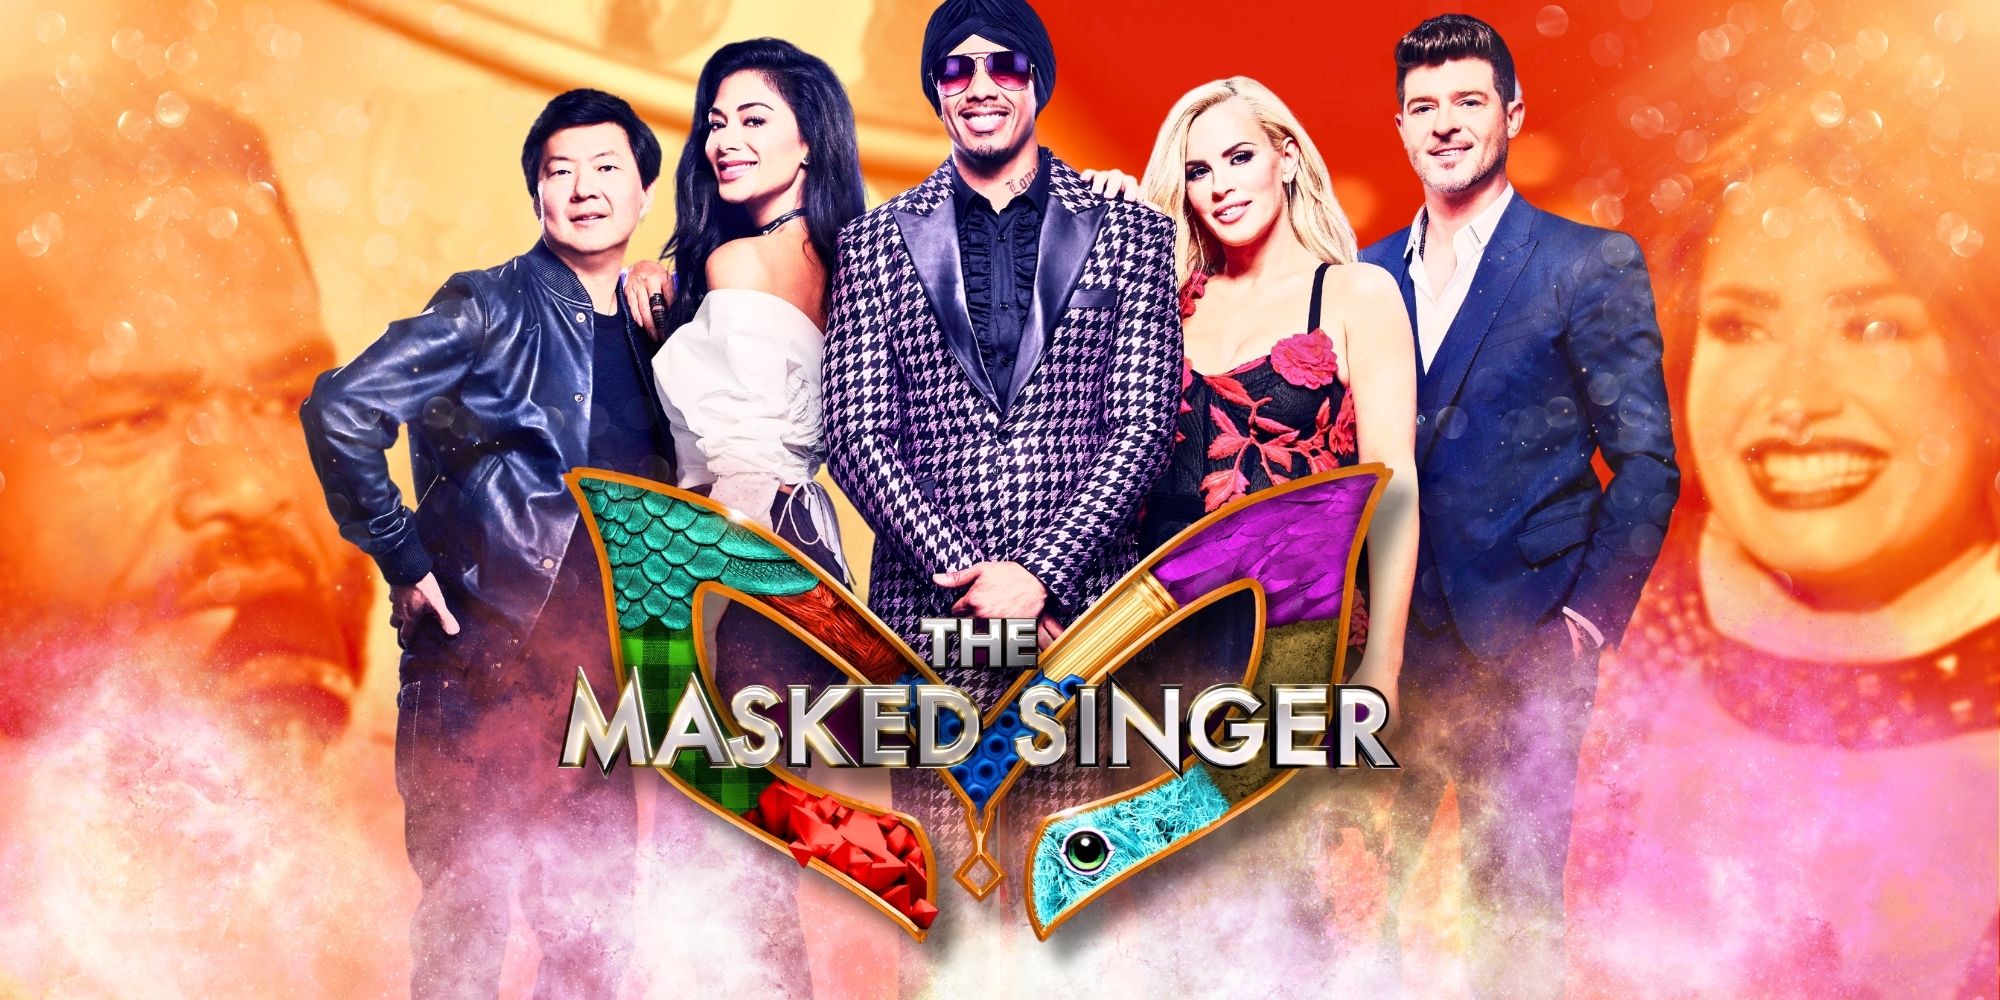 The Masked Singer Cast